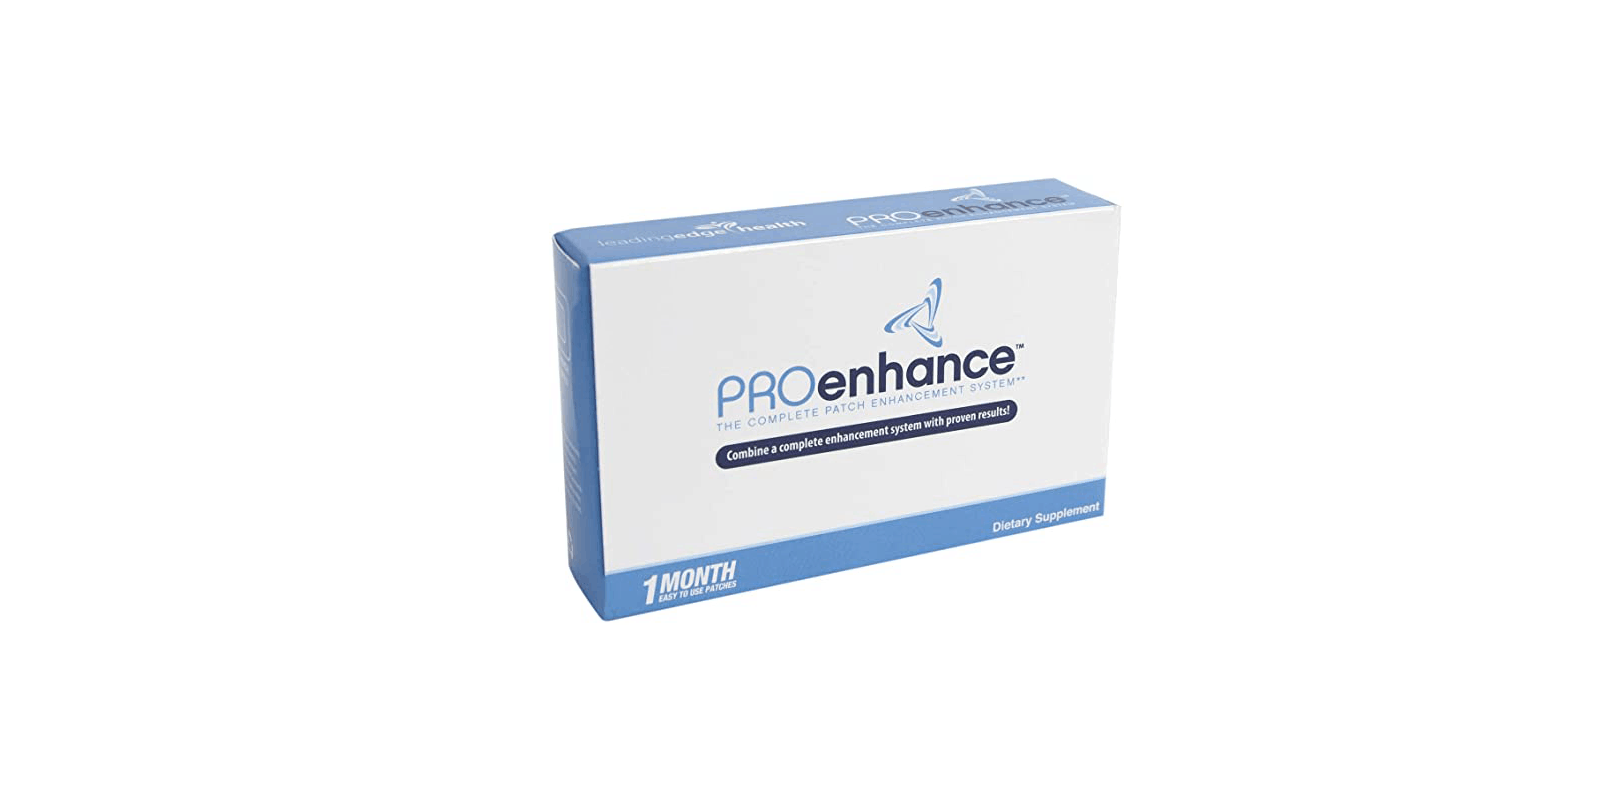 Proenhance-Review